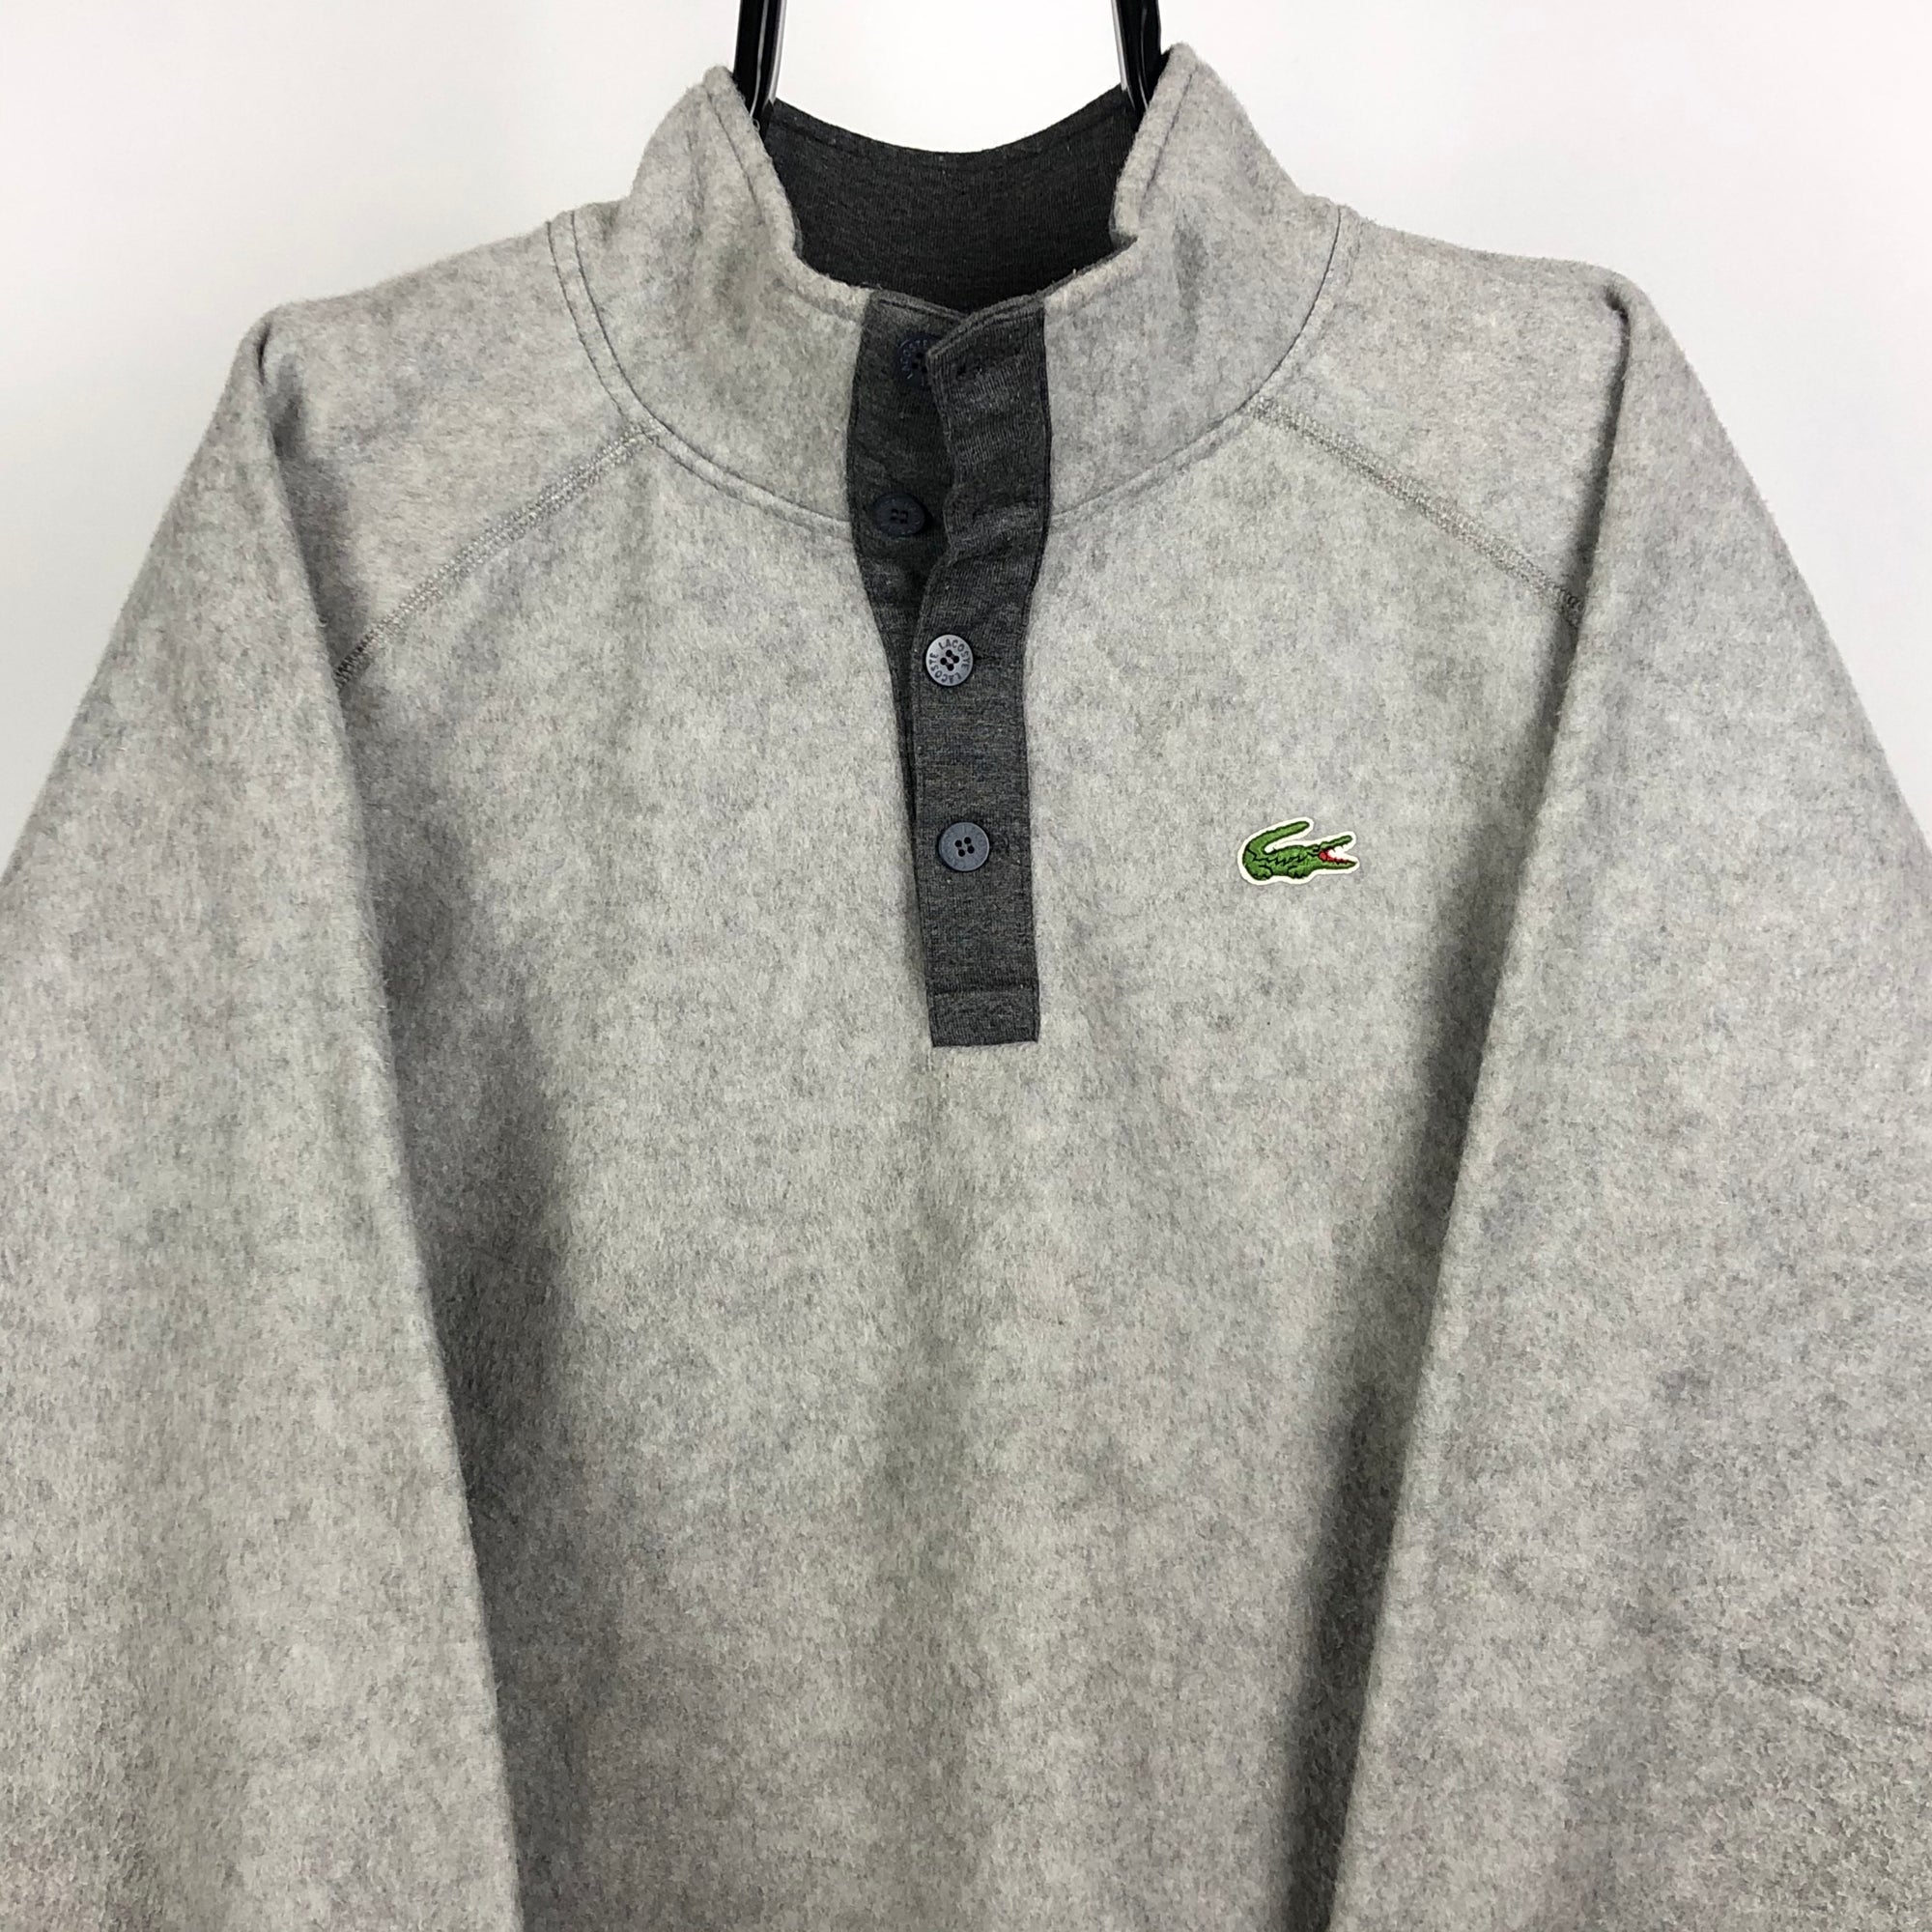 Lacoste Fleece Pullover in Grey - Men's Large/Women's XL